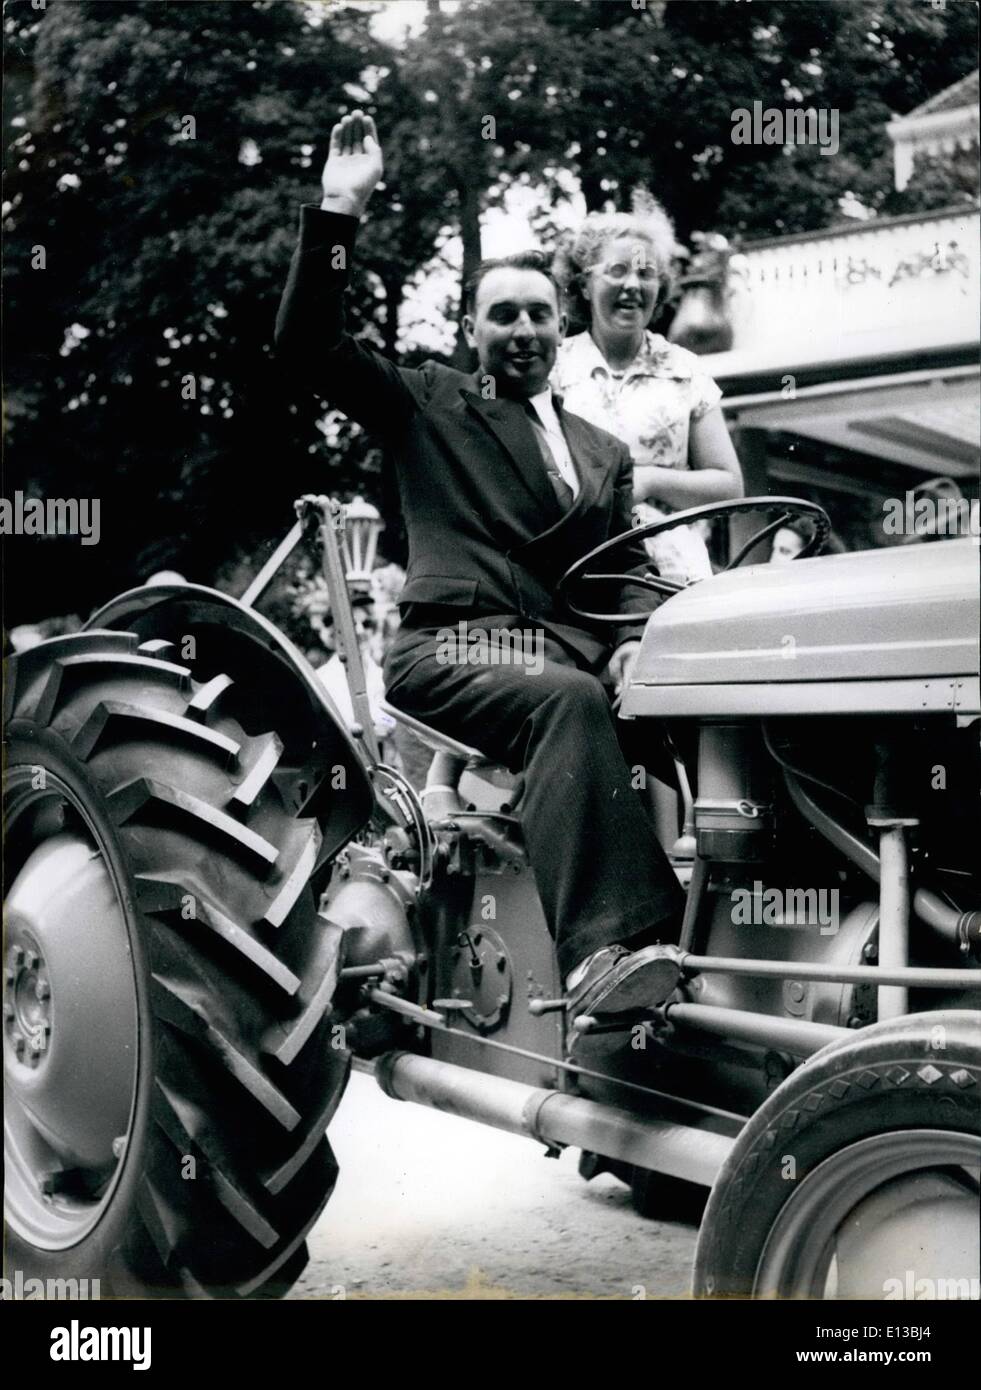 29 février 2012 - agriculteur gagne le tracteur au jeu de loterie. Gaston Chardin, un jeune agriculteur de l'Est de la France, exprime sa joie comme il essaie de le tout nouveau tracteur il a gagné dans un jeu de loterie dans laquelle plus de 500 000 agriculteurs français ont pris part. Sa femme est avec lui. Juillet 9th/53 Banque D'Images